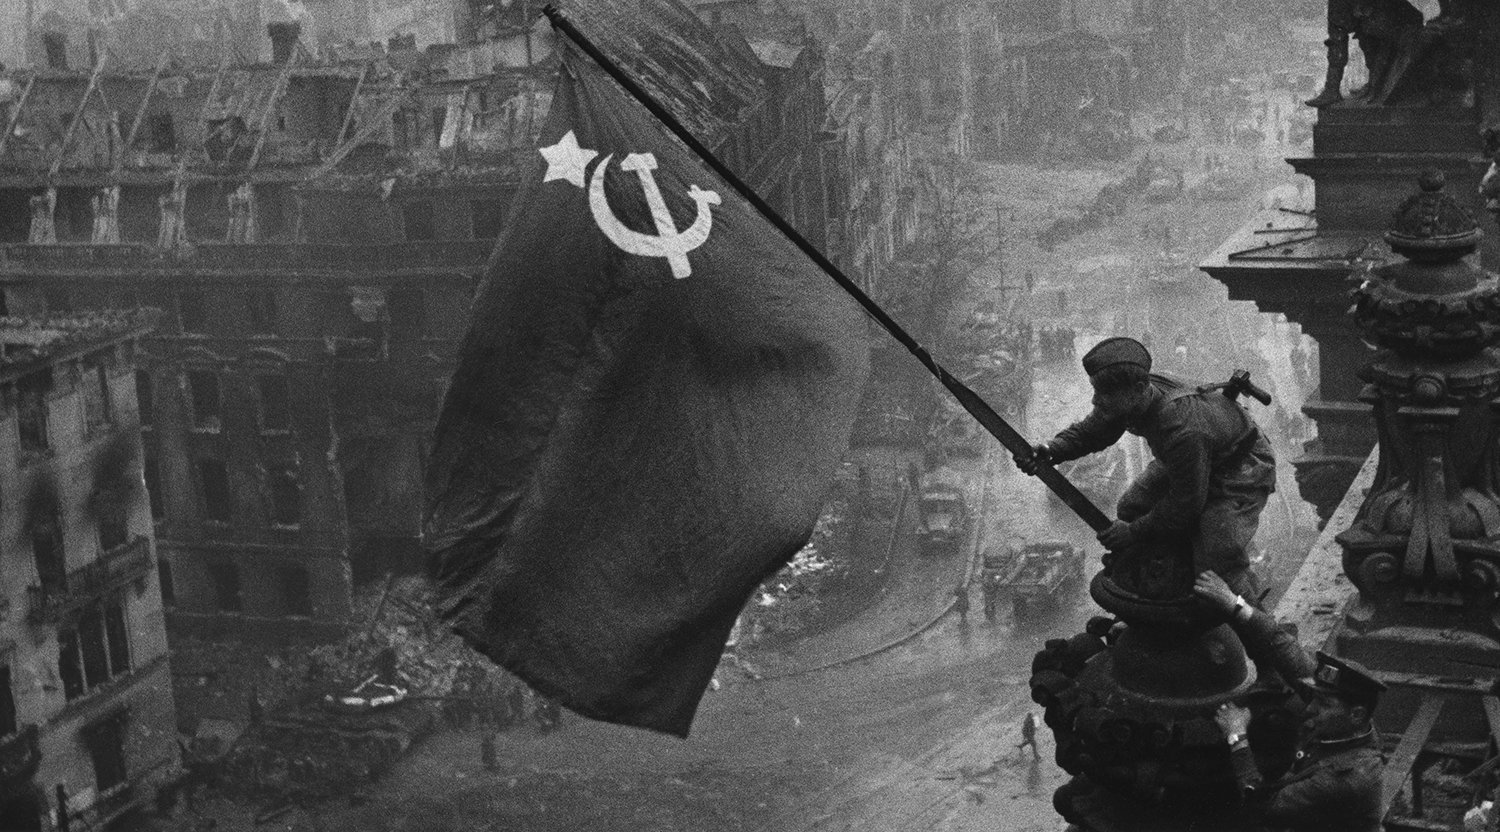 фото флаг над рейхстагом в хорошем